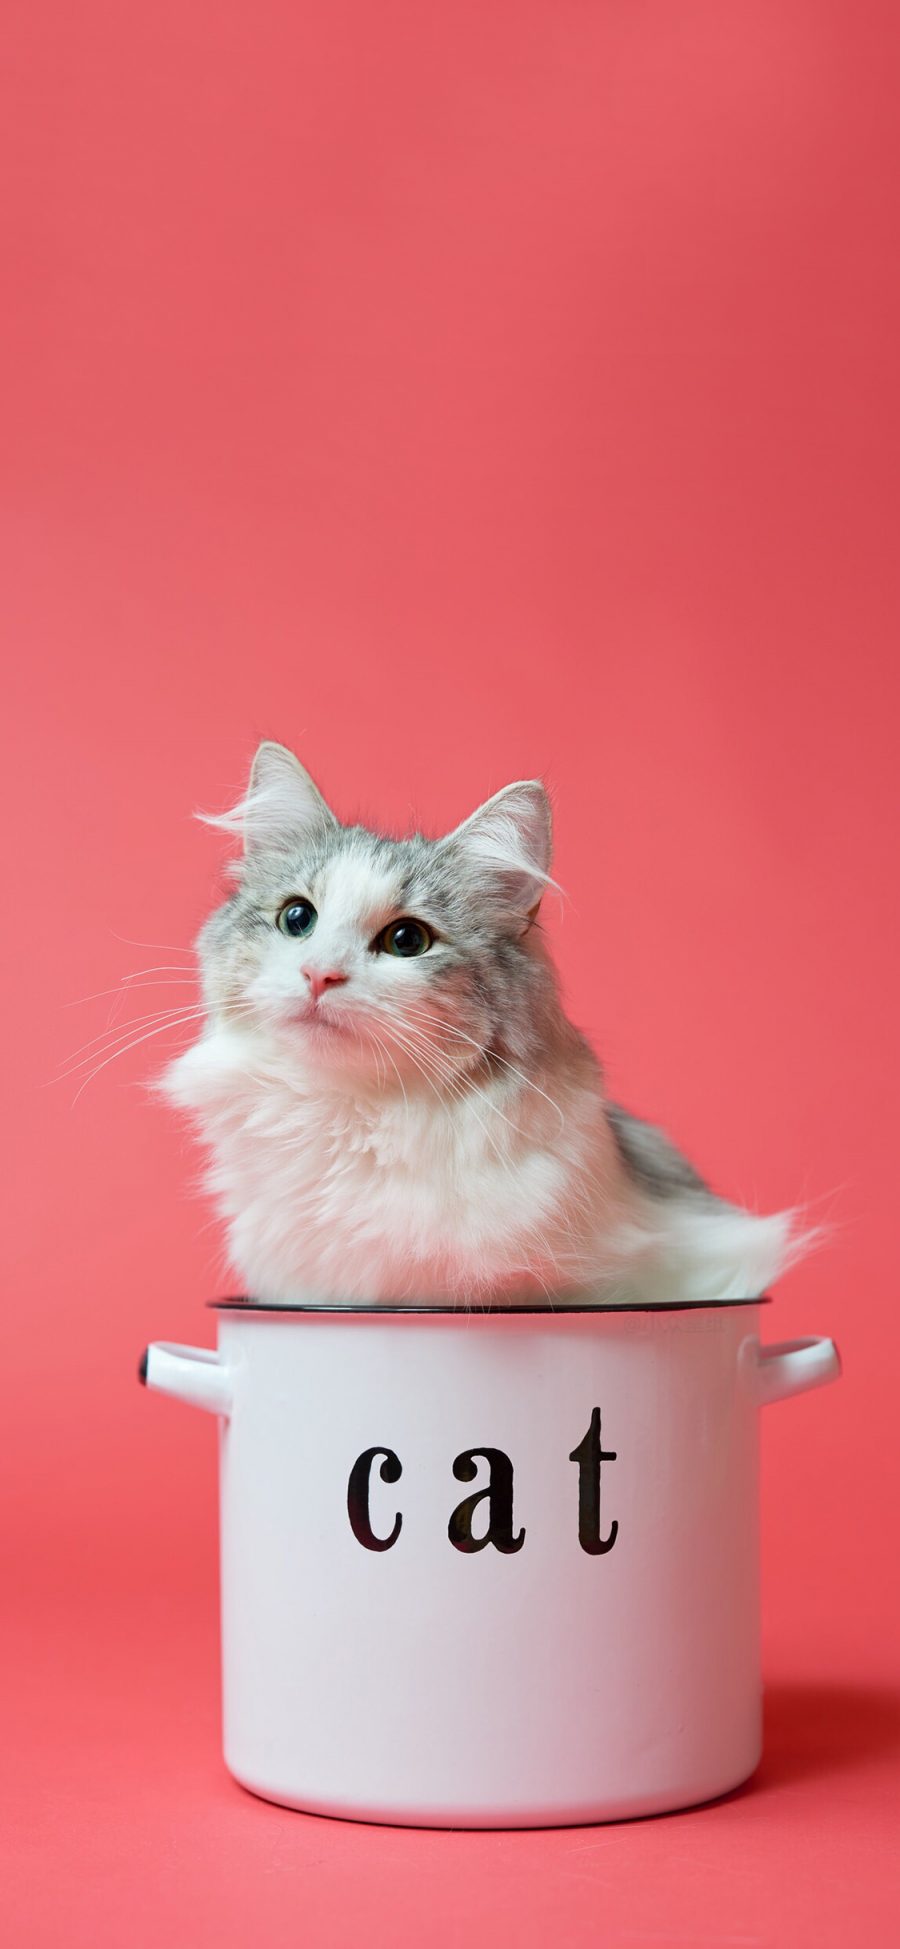 [2436×1125]猫咪 cat 搪瓷杯 喵星人 可爱 萌 宠物 苹果手机壁纸图片